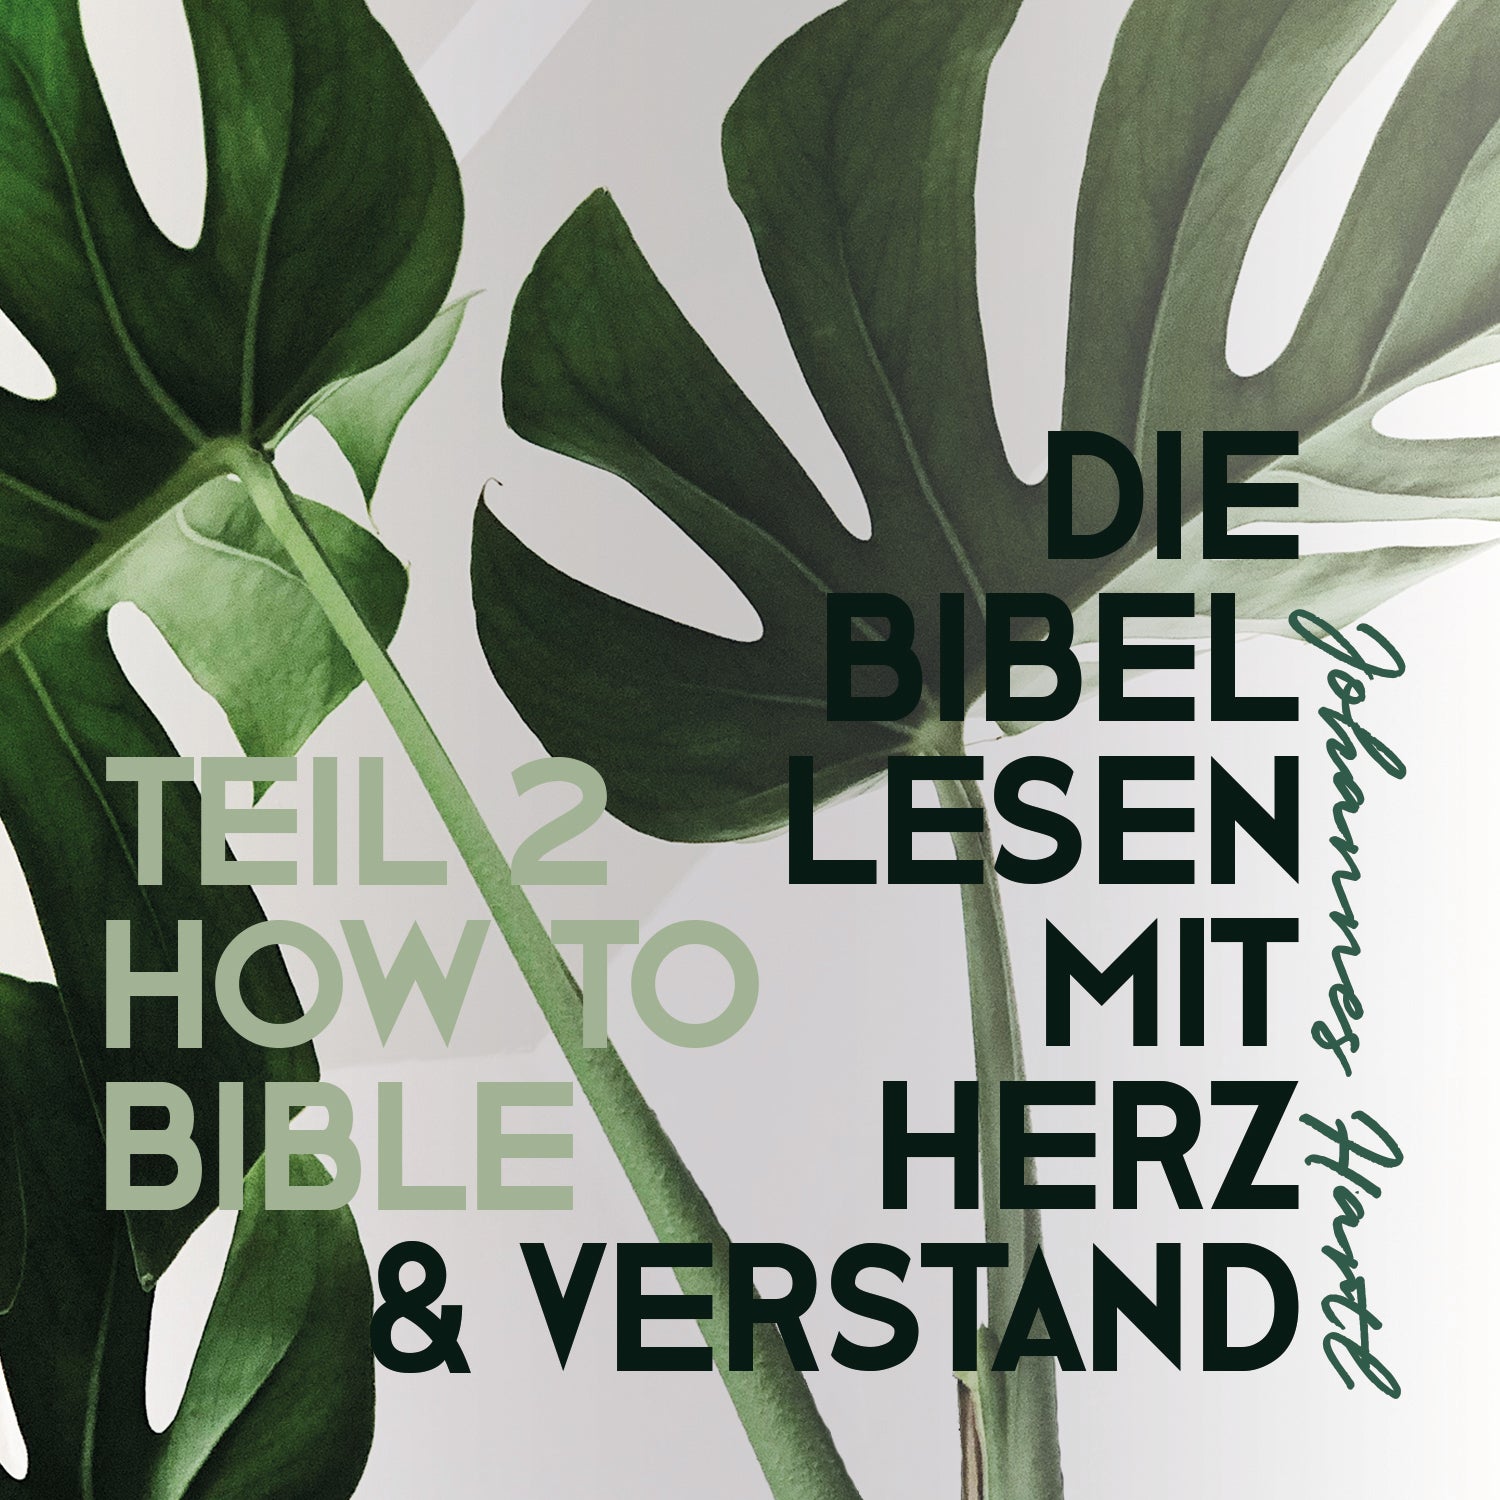 2018-12-06-Johannes-Hartl-Die-Bibel-lesen-mit-Herz-und-Verstand-Teil-2-1500x1500jrRd2pxG7ky8Q.jpg